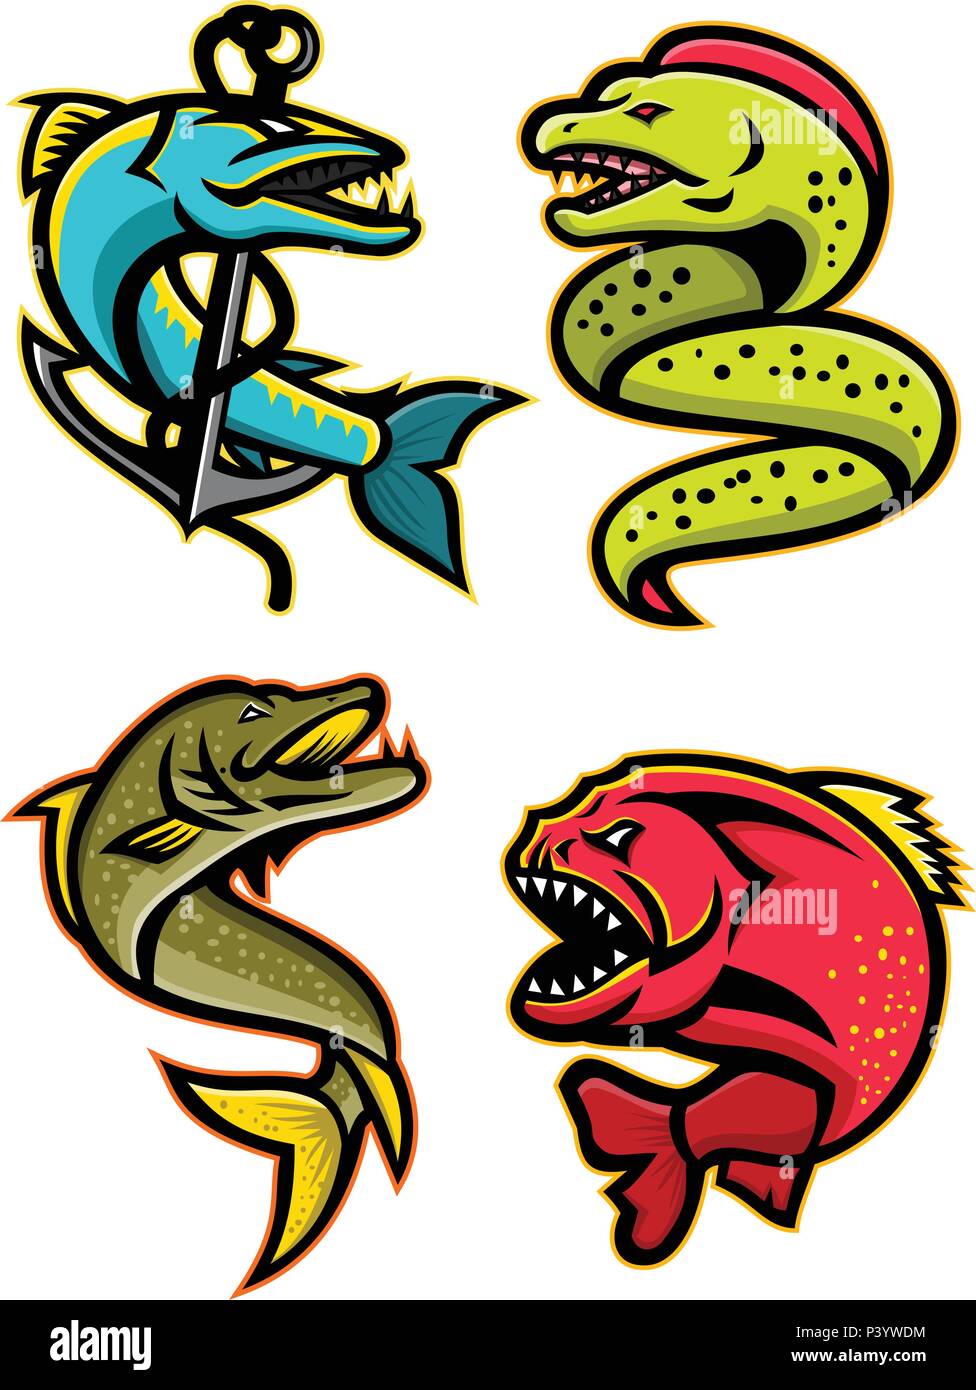 Maskottchen Symbol Abbildung der wilden und gefürchteten Fische wie die Barracuda, Moray, Aal, Hecht oder muskellunge Fische, Piranha, pirana oder Stock Vektor